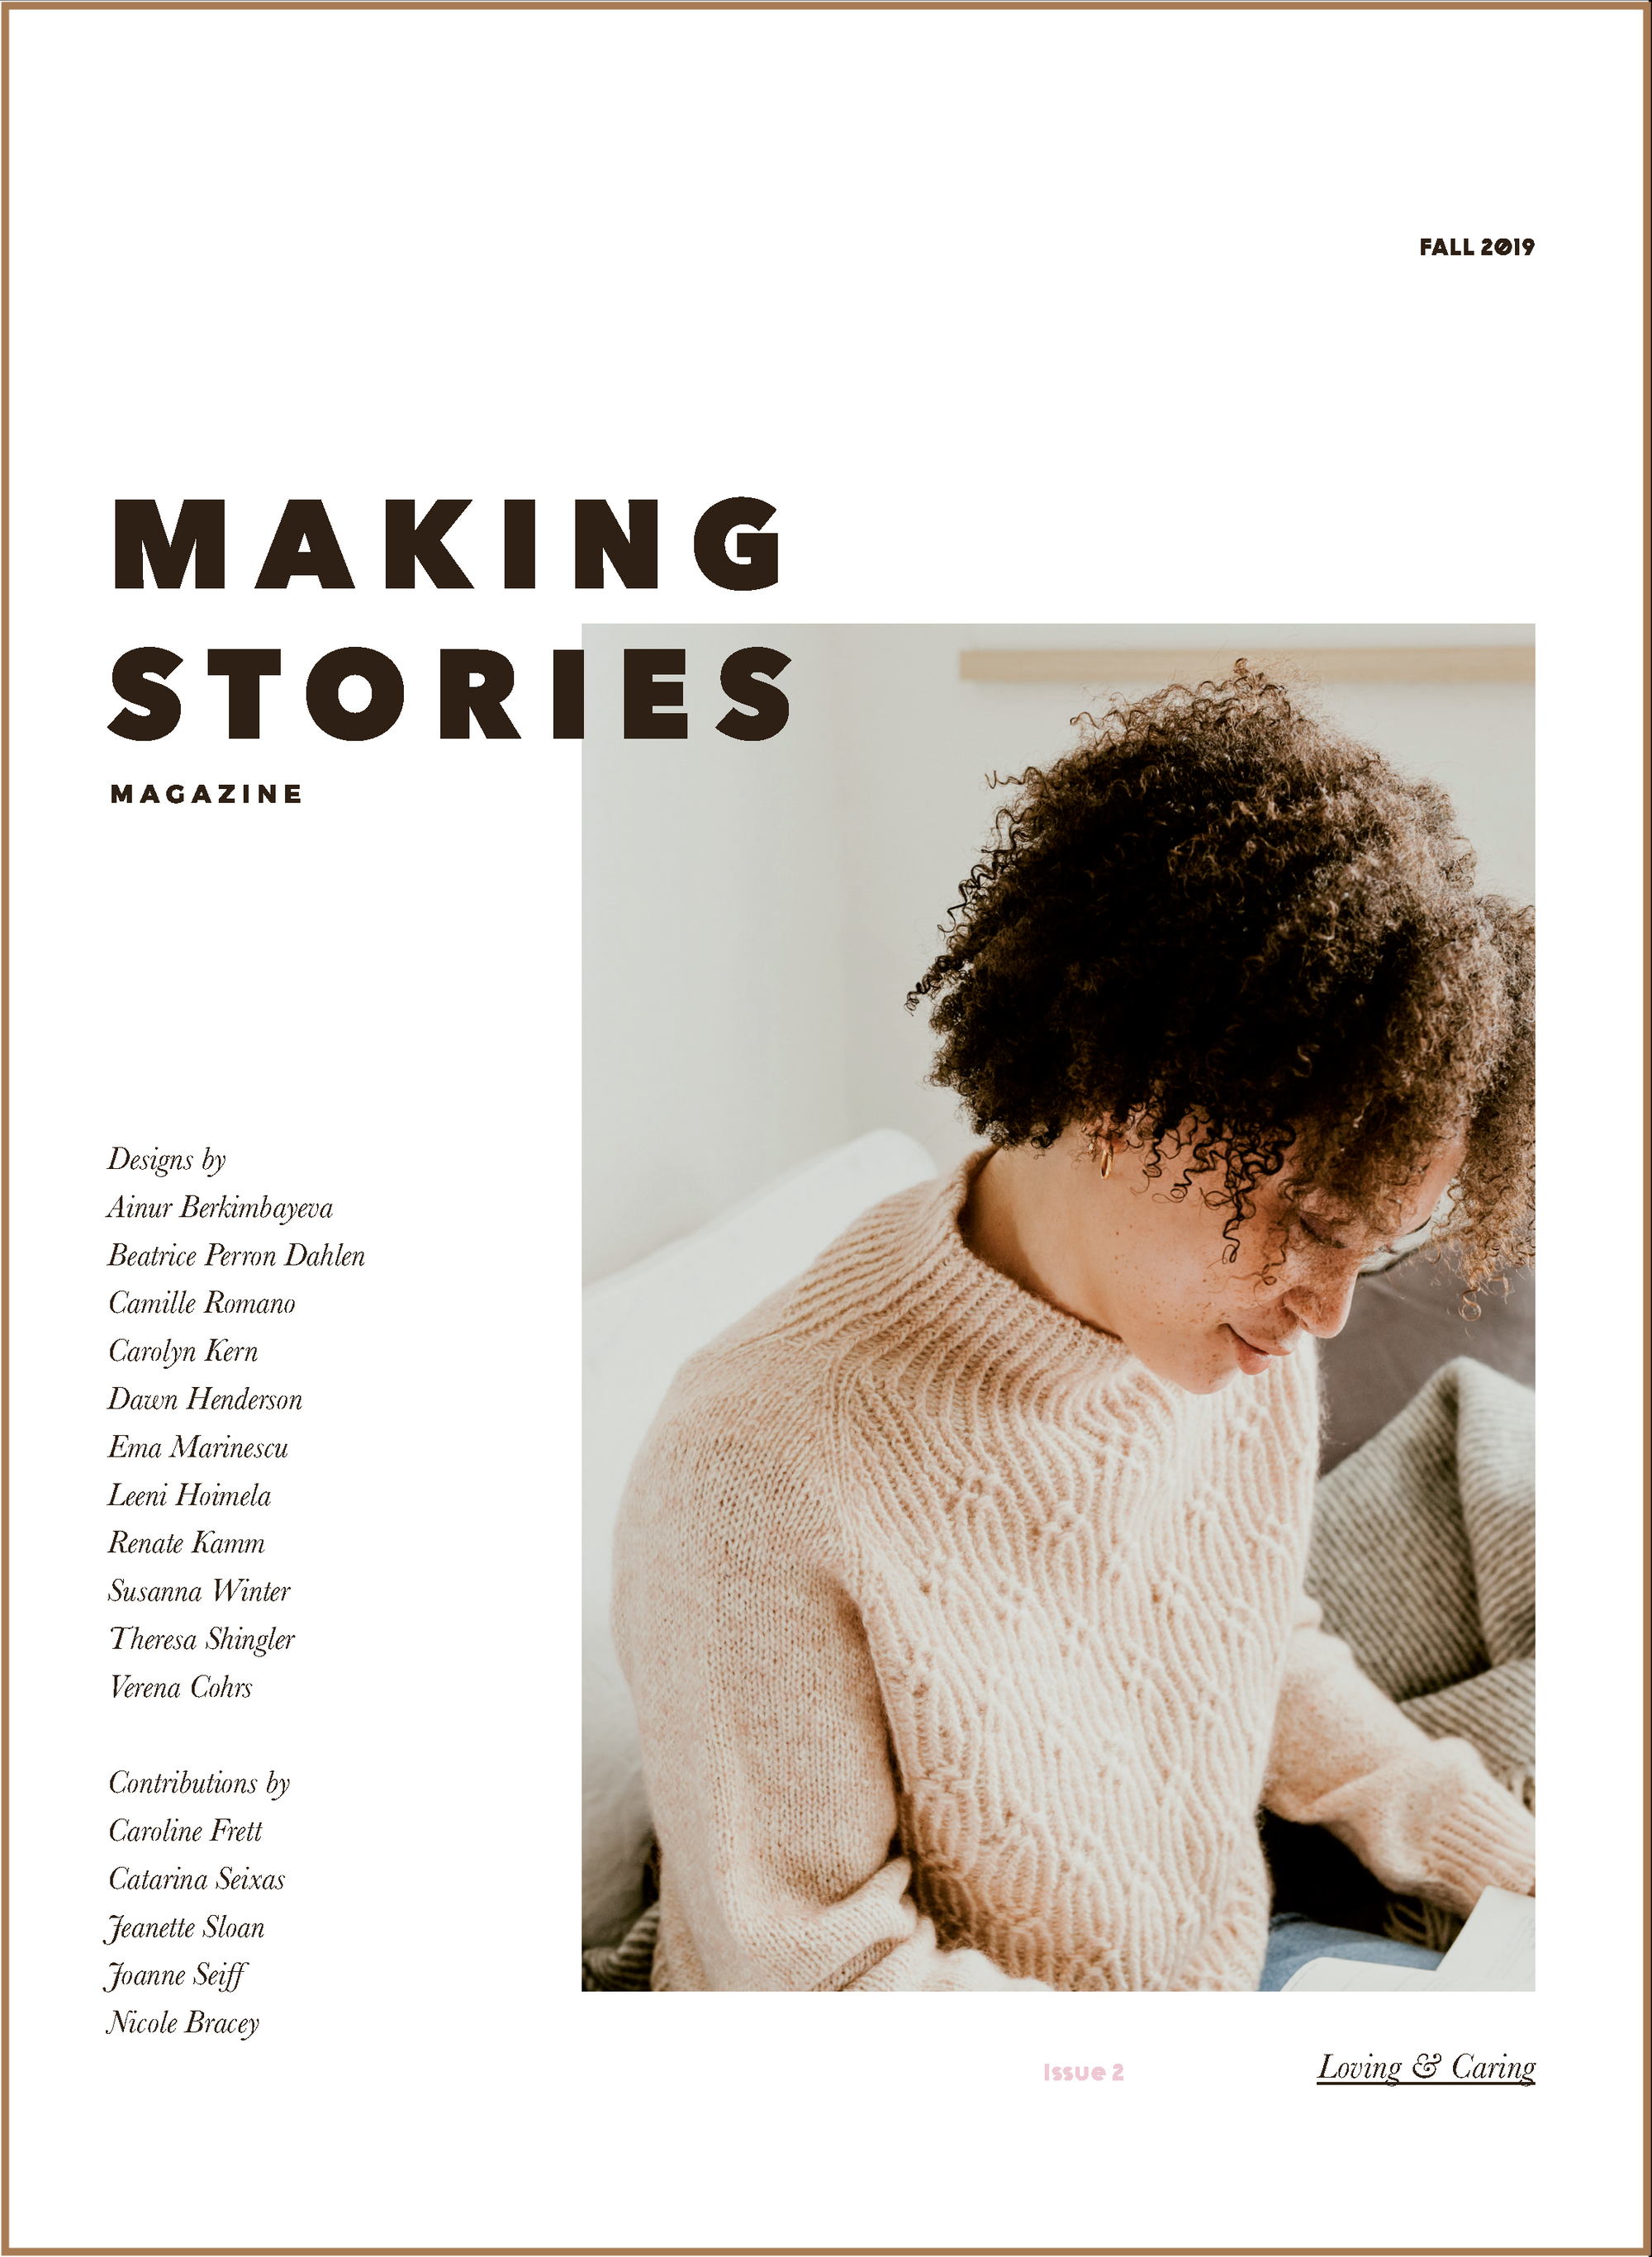 Mängelexemplar: Making Stories Magazine Ausgabe 2